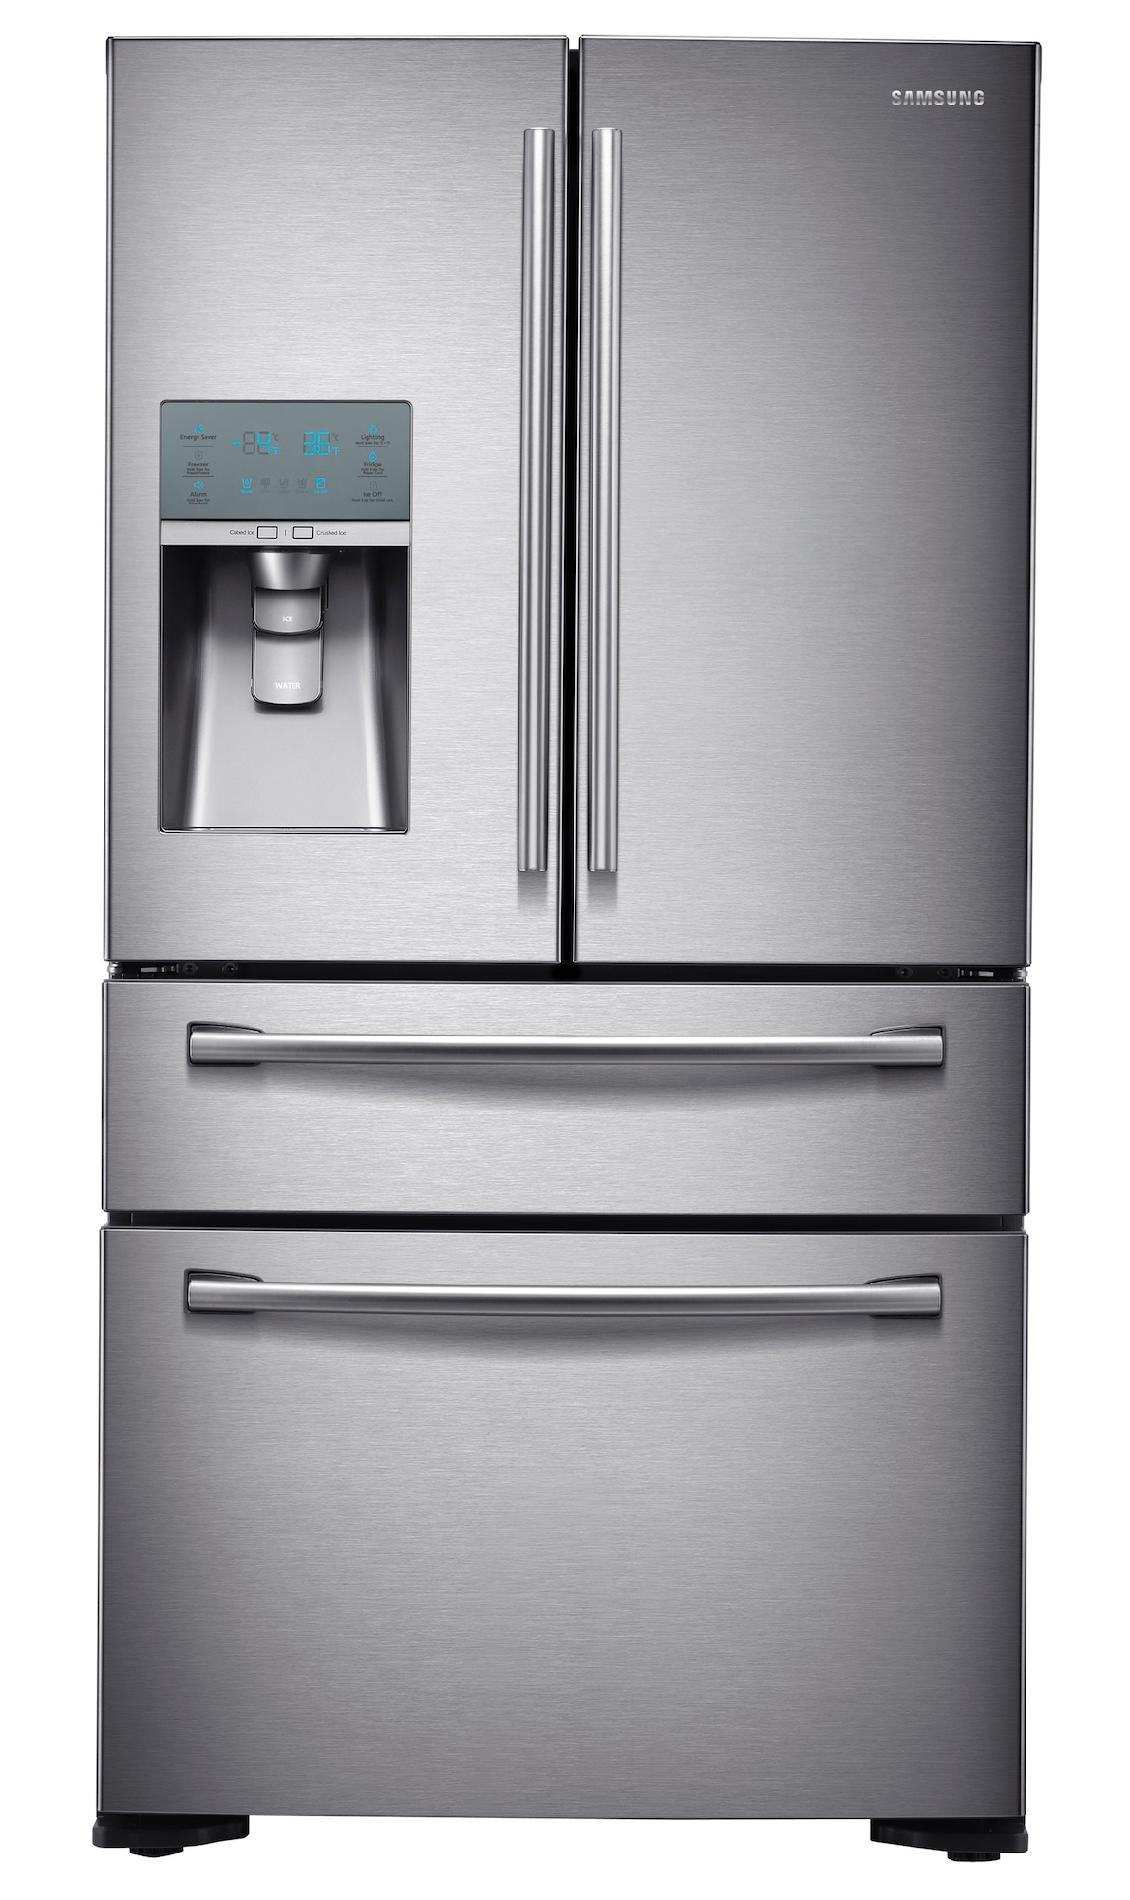 Samsung 24 cu. ft. Counter-Depth 4-Door Refrigerator w/ FlexZone? Drawer - Stainless Steel